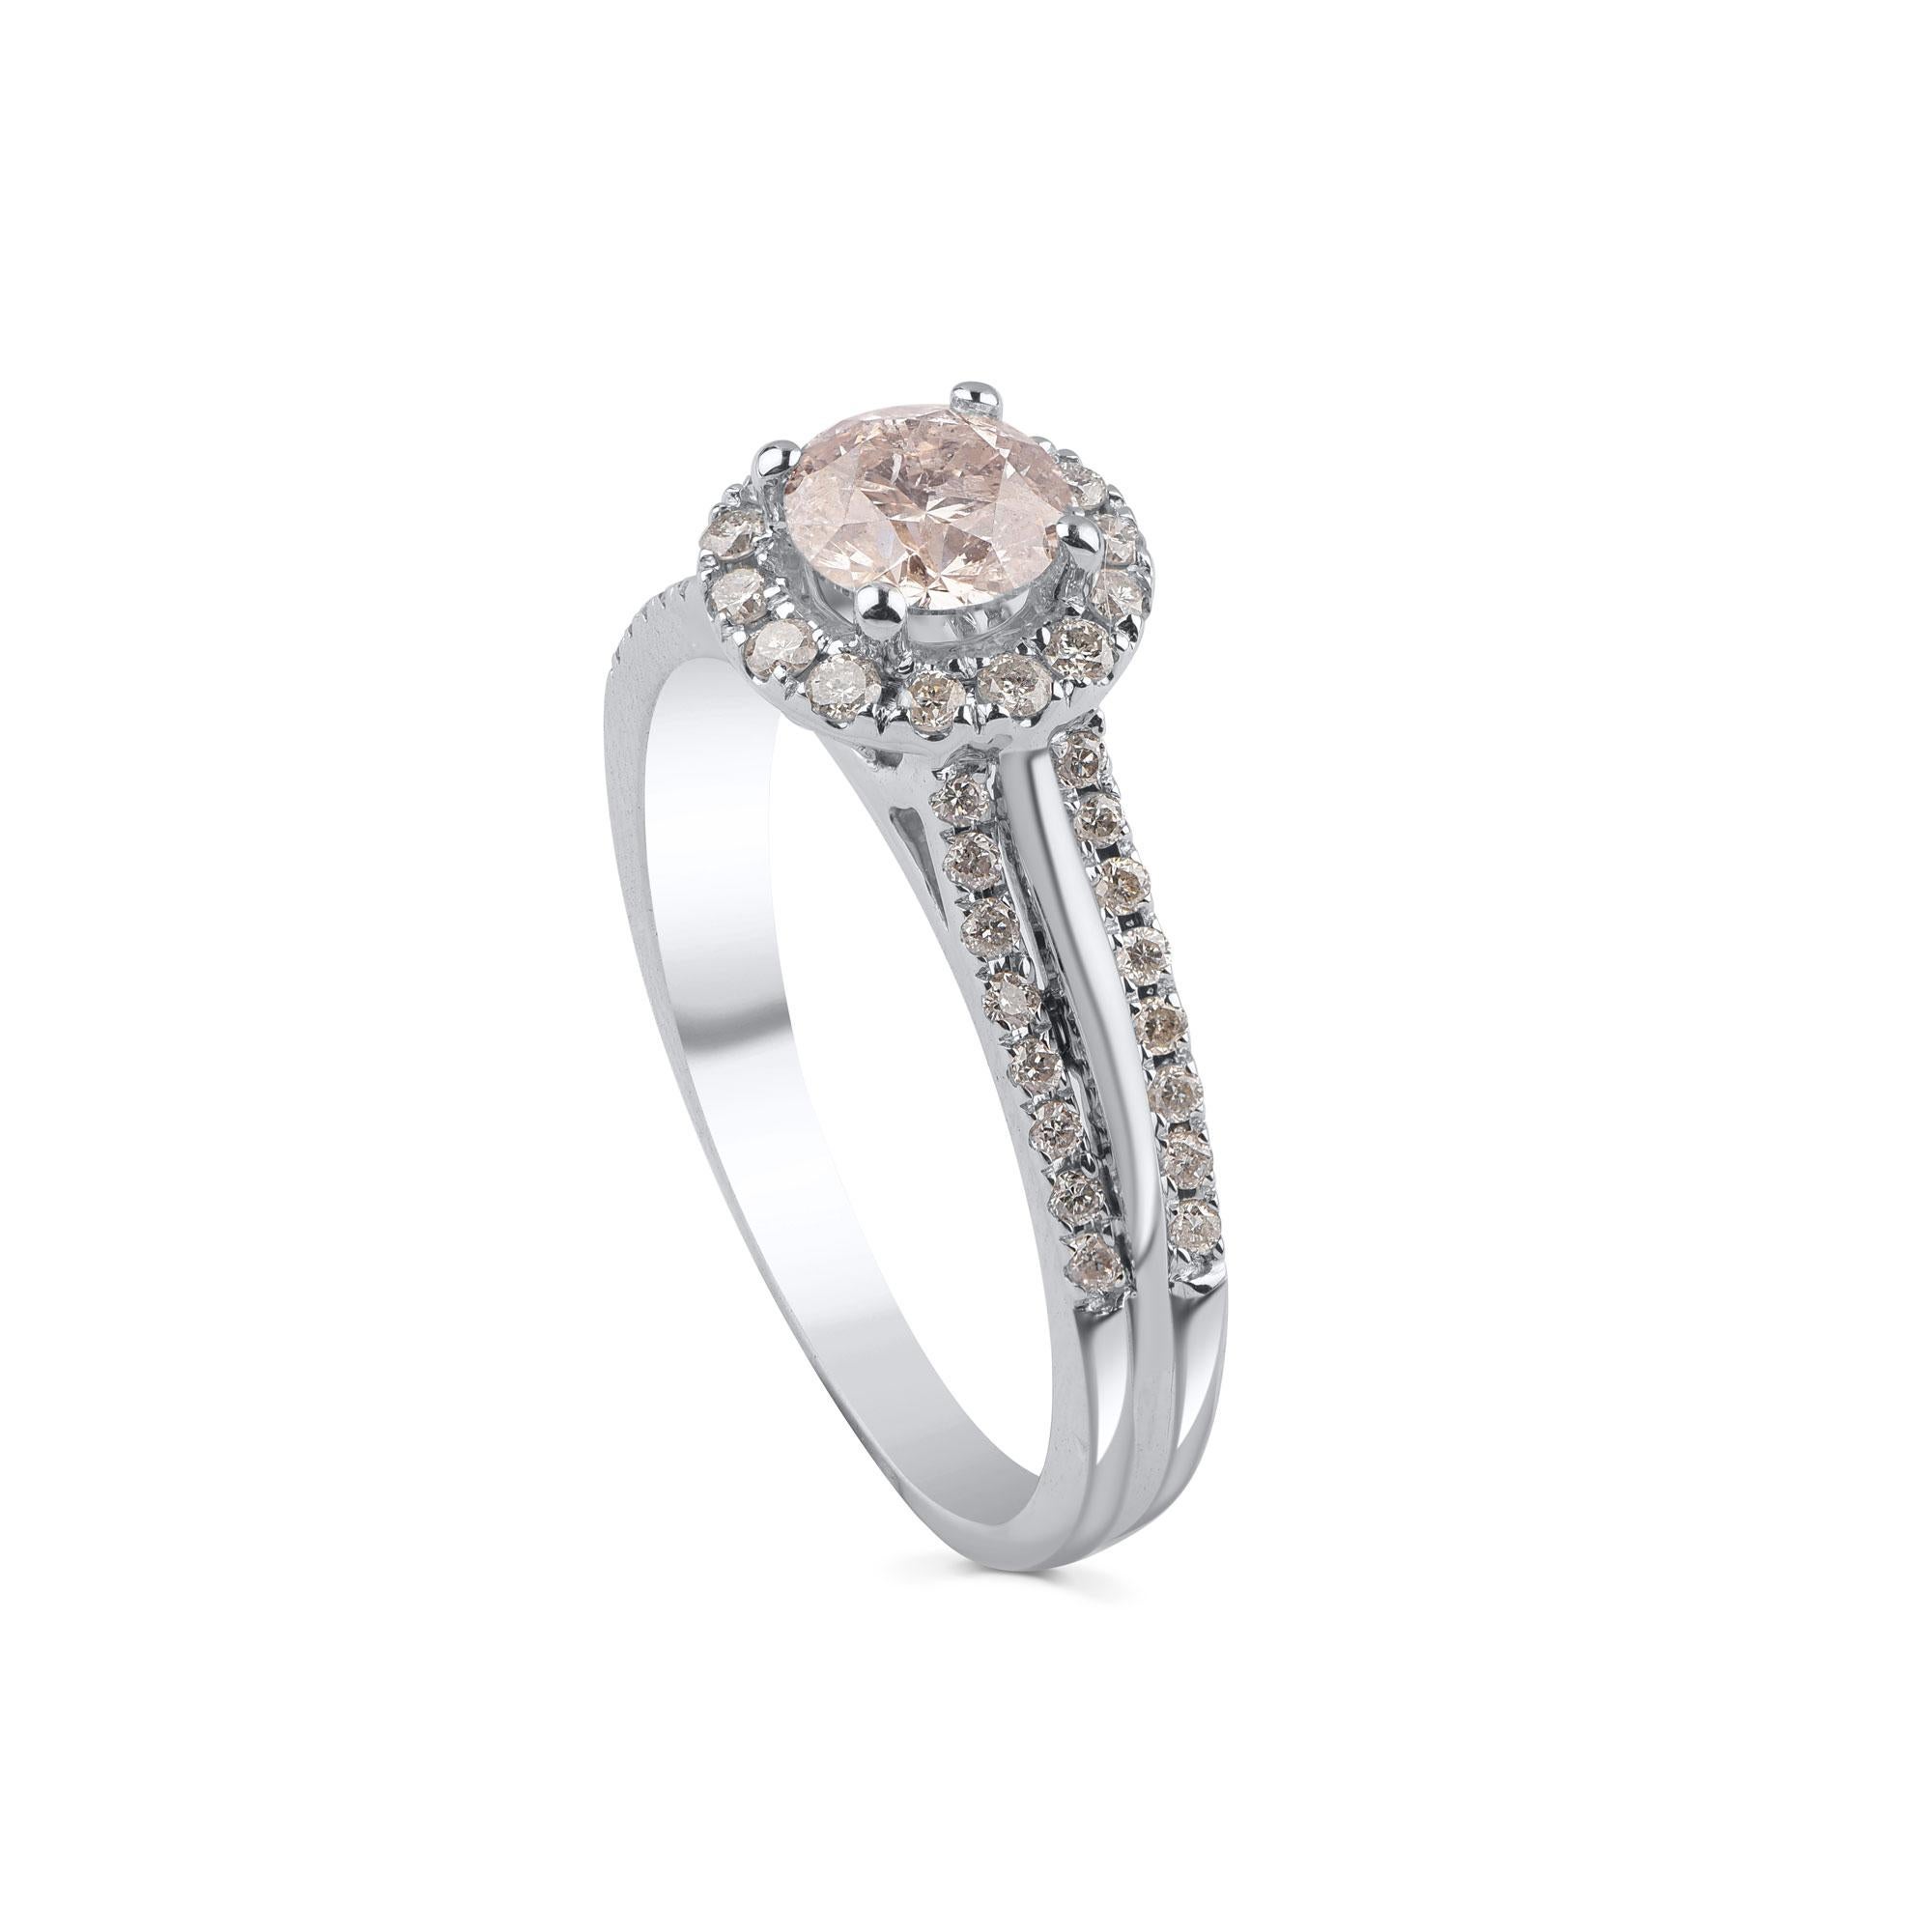 Réalisé en or blanc 18 carats, il est éblouissant avec ses 47 diamants ronds magnifiquement enchâssés dans des micro-pinces et des pointes. Les diamants sont de couleur J-K et de pureté I3. La couleur du métal peut être personnalisée en or rose et